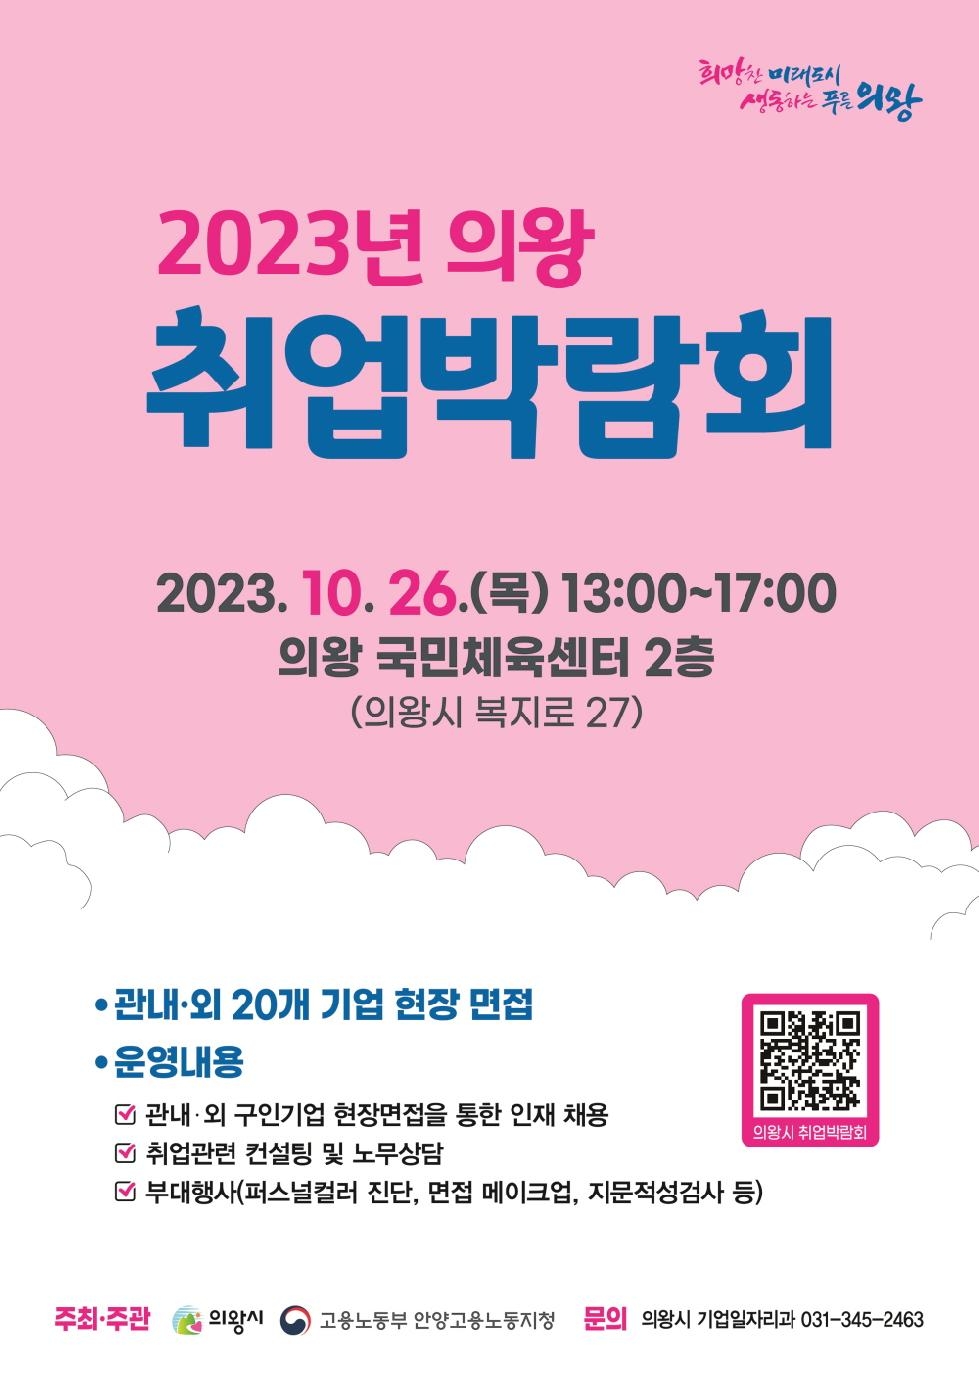 의왕시, 2023년 하반기 취업박람회 개최